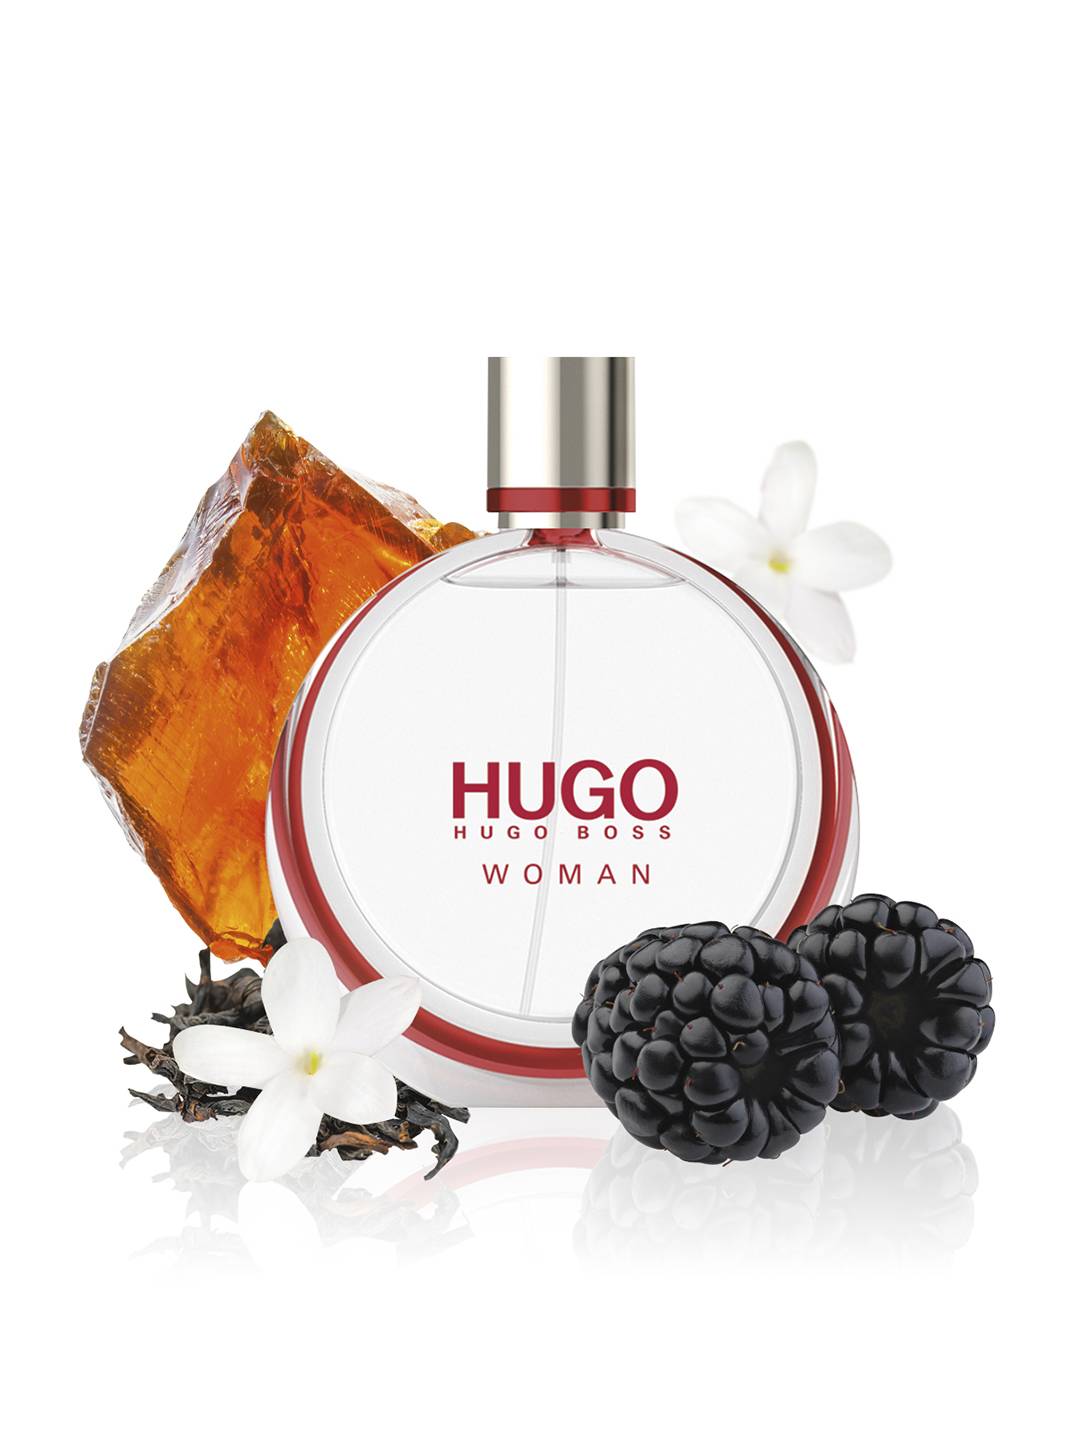 Hugo woman eau de parfum hugo boss для женщин